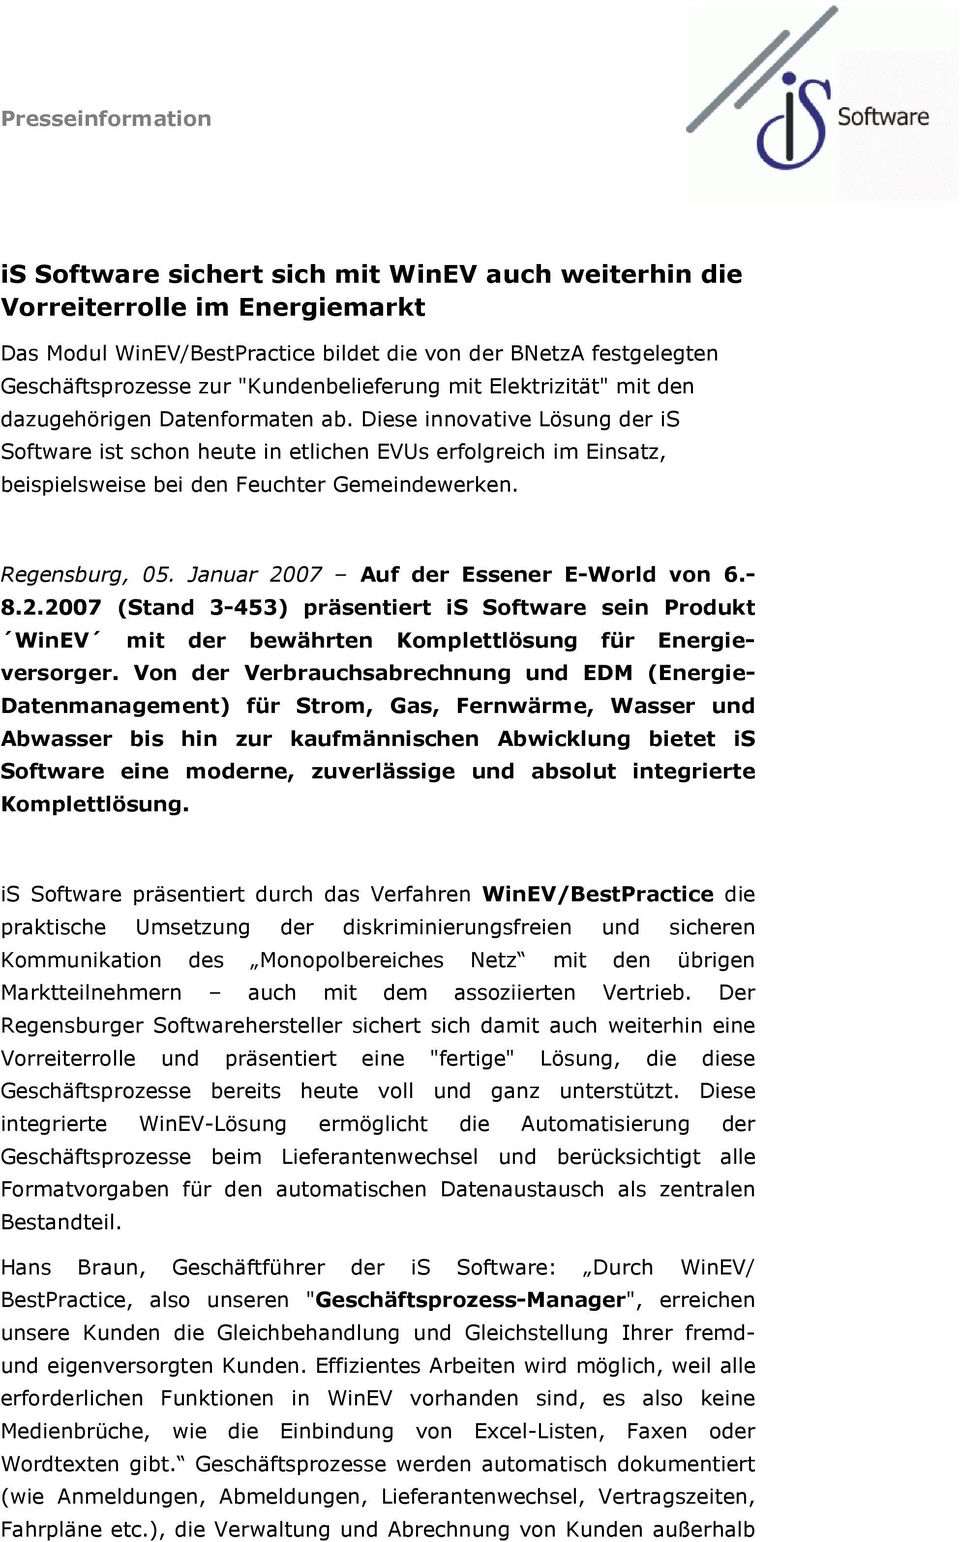 Regensburg, 05. Januar 2007 Auf der Essener E-World von 6.- 8.2.2007 (Stand 3-453) präsentiert is Software sein Produkt WinEV mit der bewährten Komplettlösung für Energieversorger.